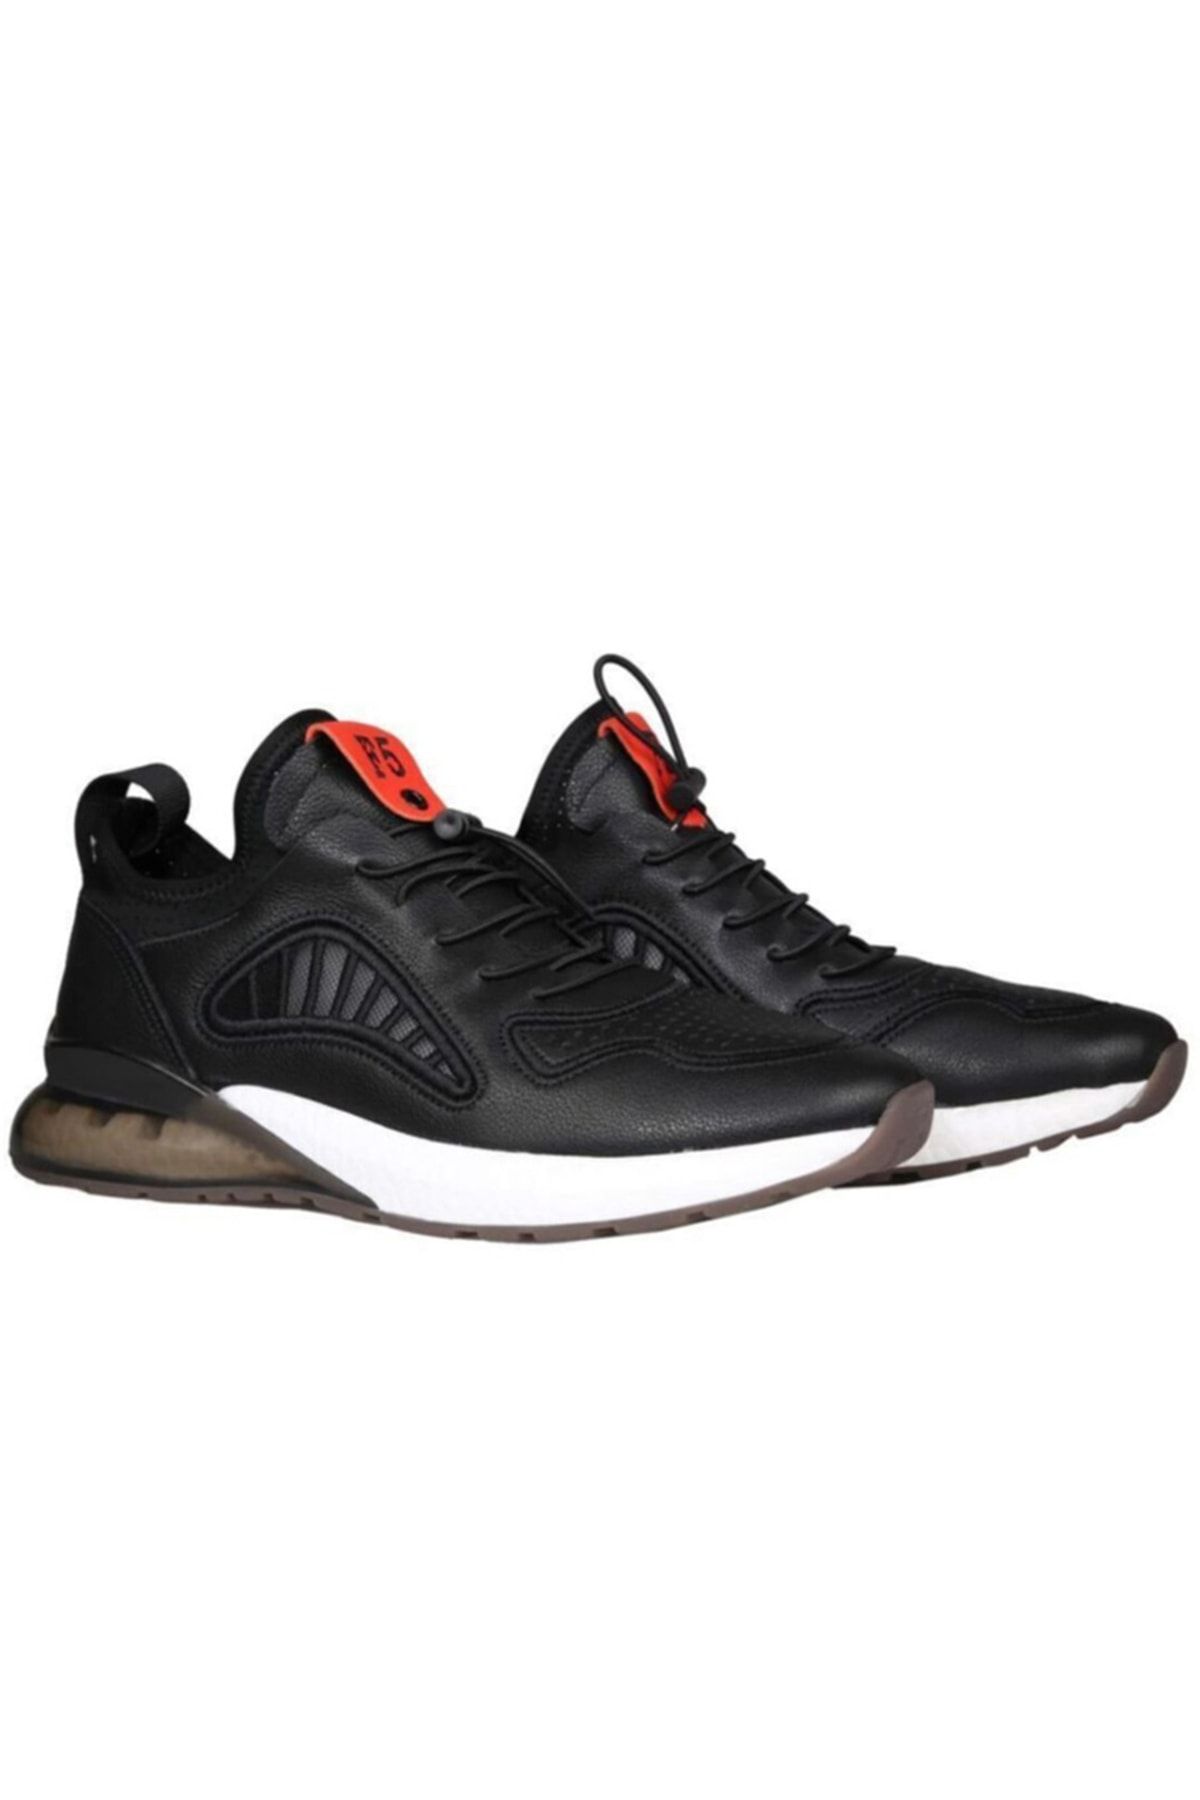 Guja Siyah Renkli Spor Ayakkabı - 22k491